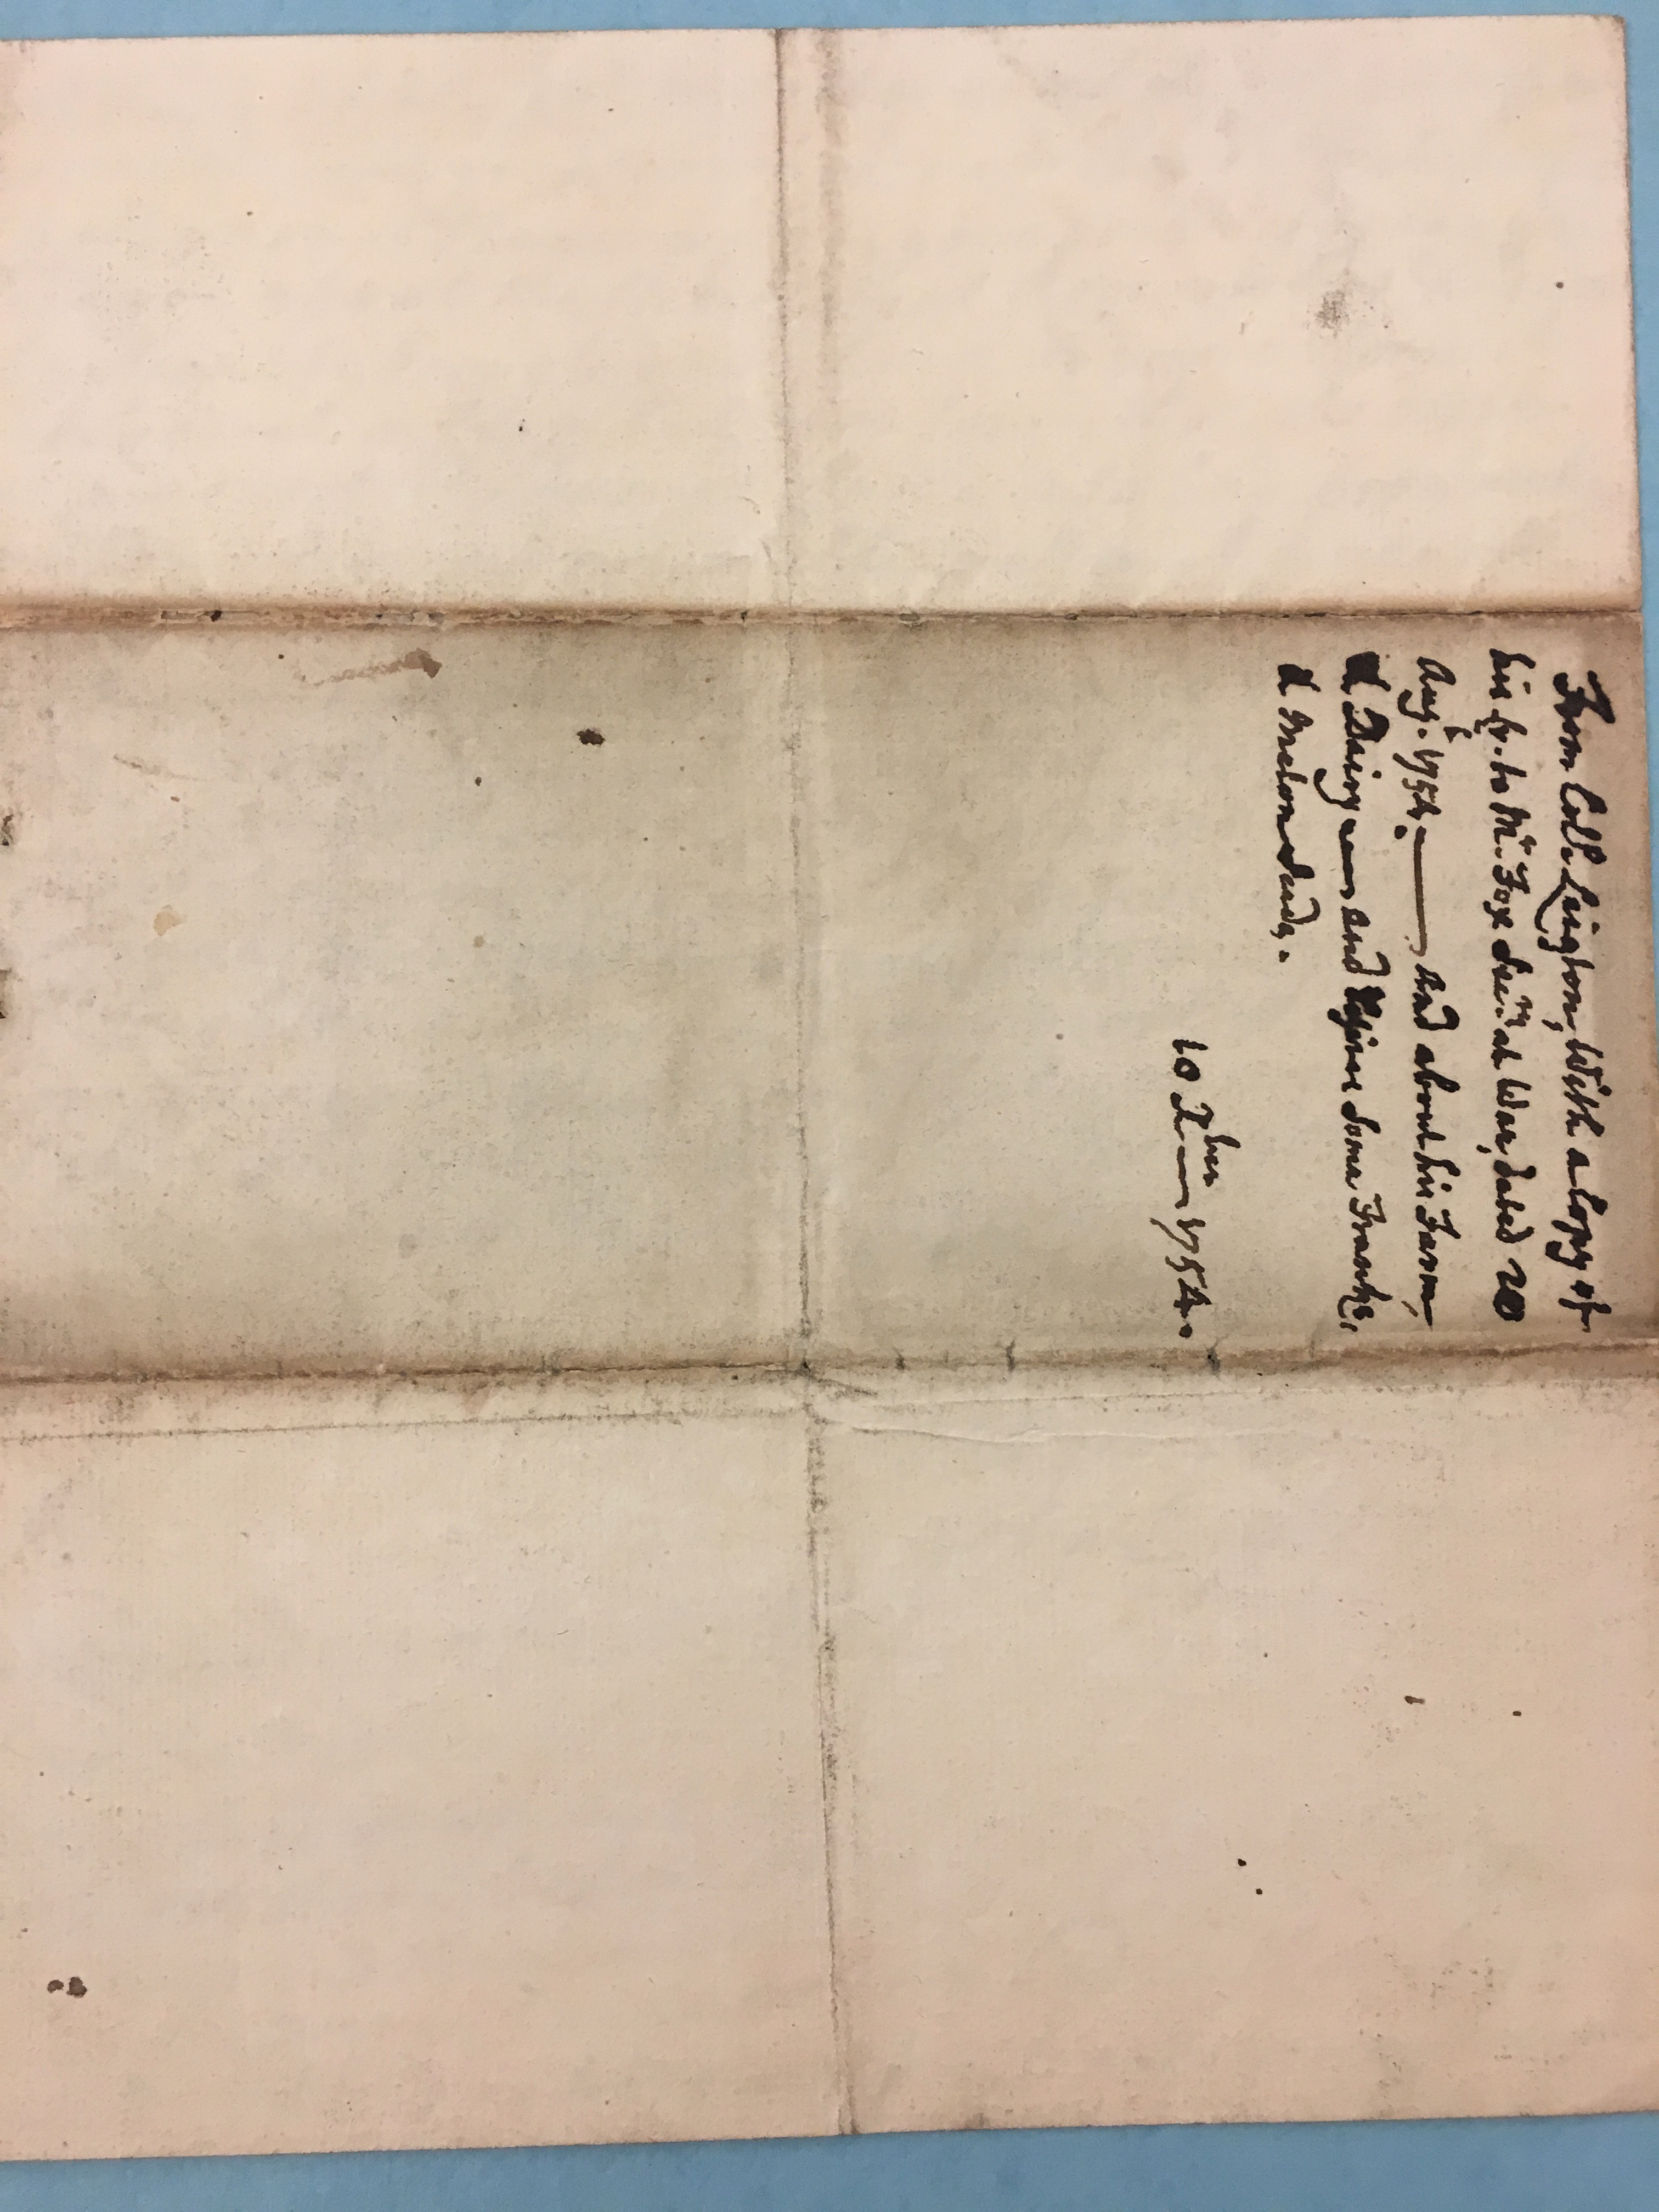 Image #3 of letter: John Leighton to Edmund Herbert, 10 December 1754